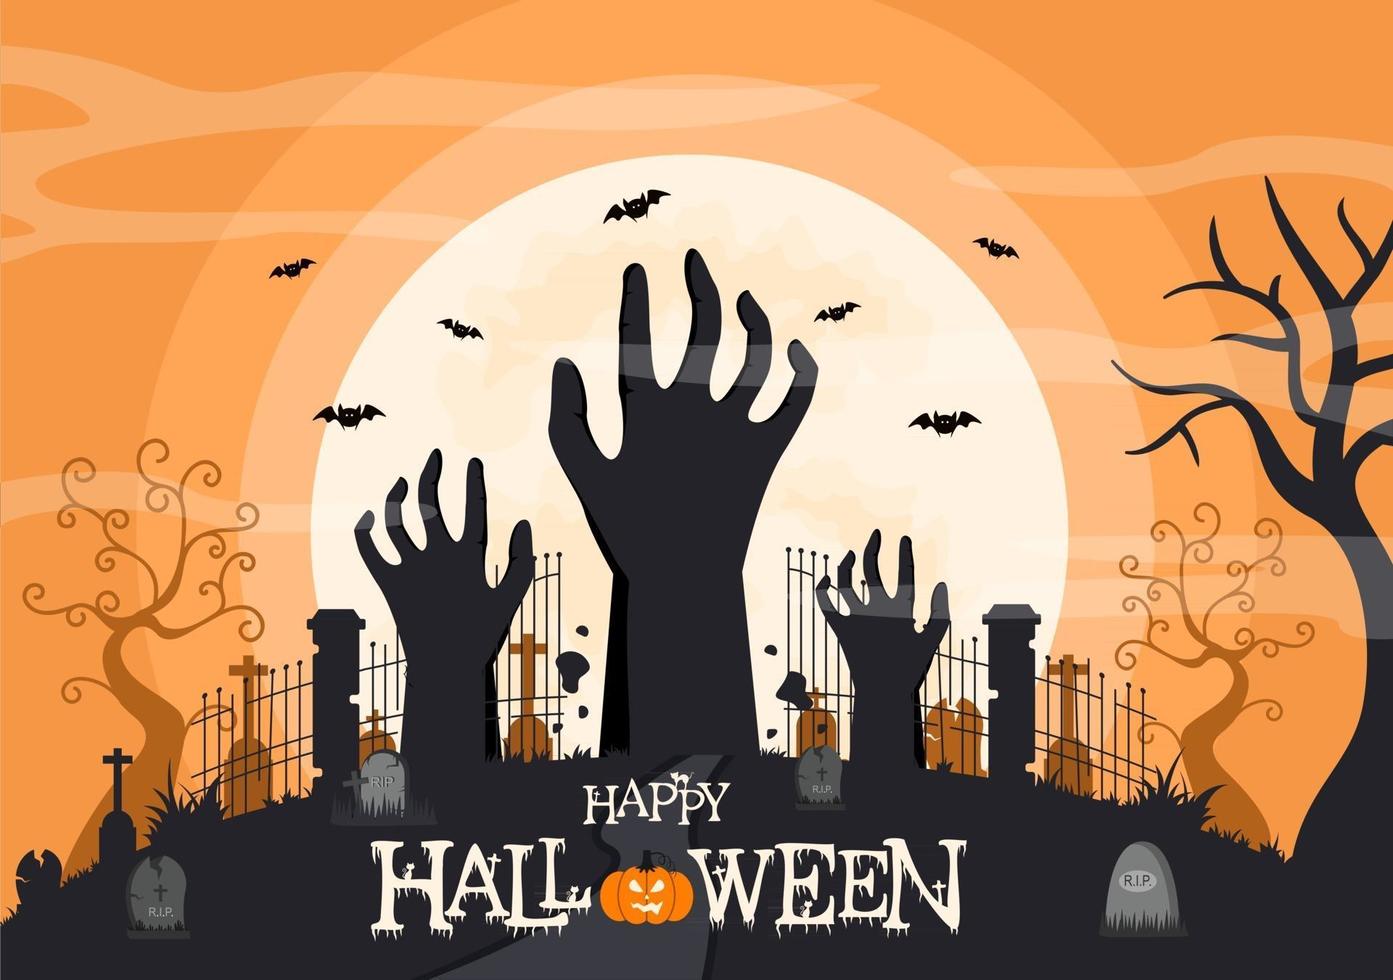 halloween nattfest bakgrundslandningssida illustration vektor